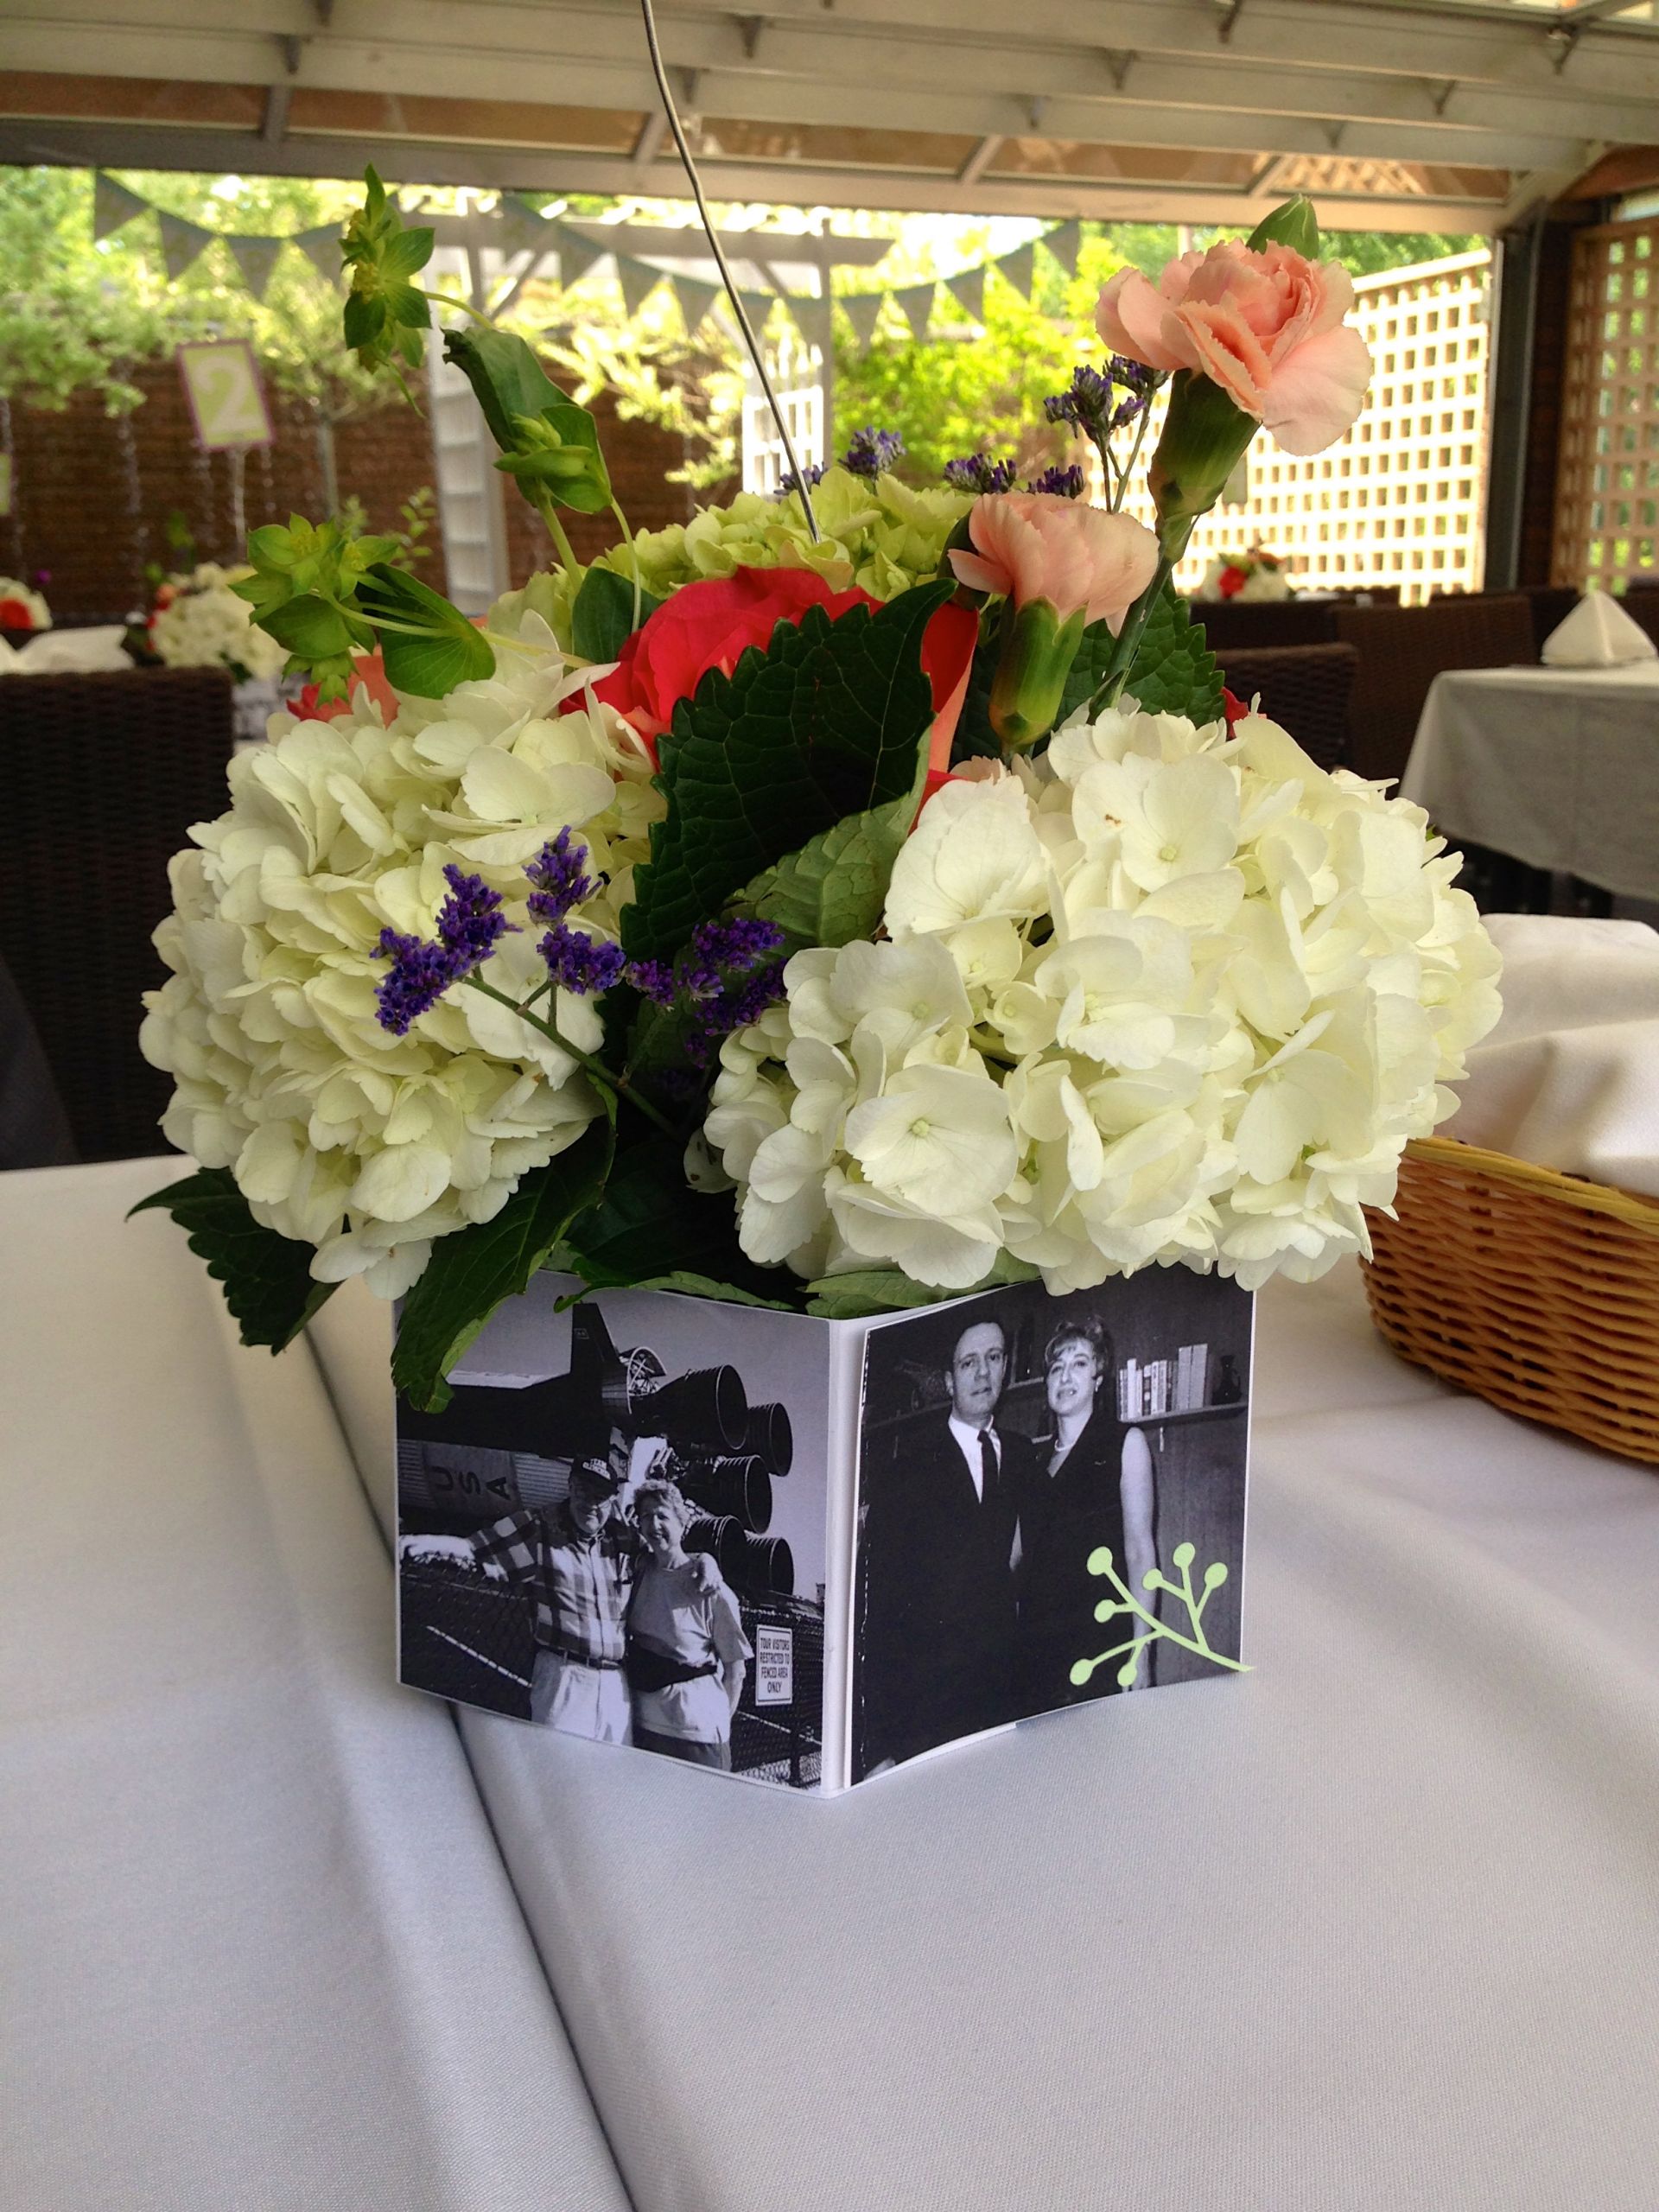 Flower Arrangement Ideas For Engagement Party
 centerpieces